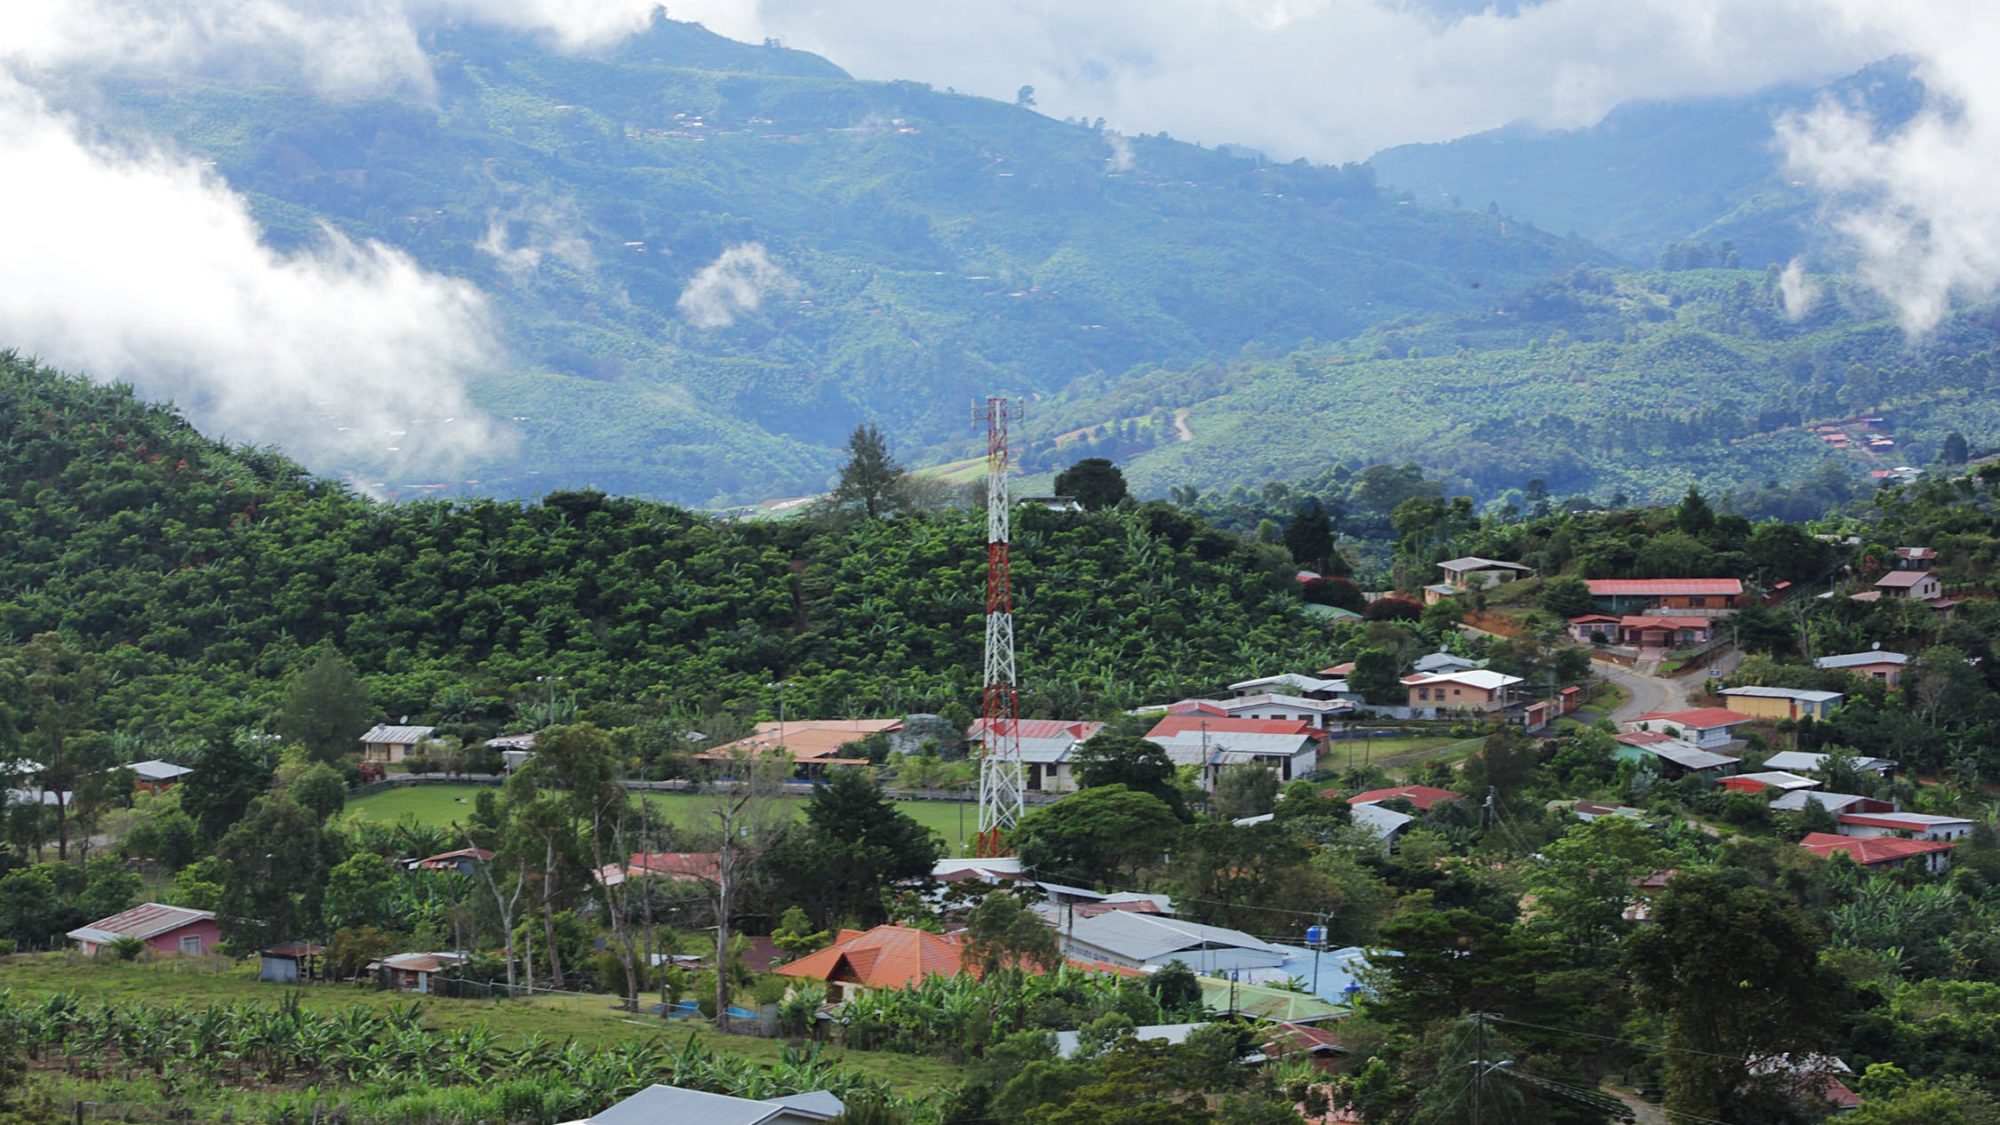 Lush, rural town in mountains of Latin America